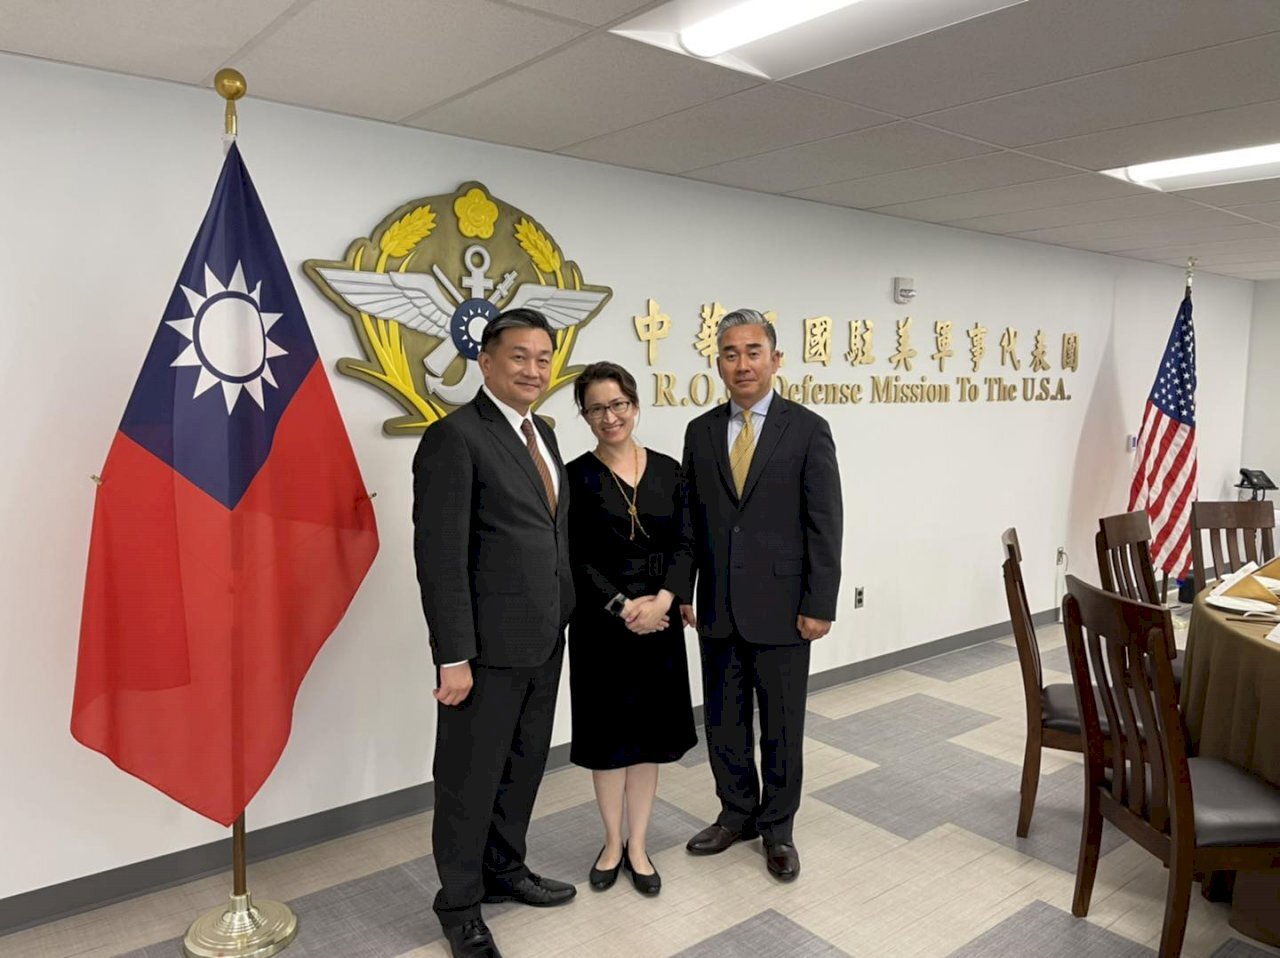 Le siège rénové de la mission militaire taïwanaise aux Etats-Unis